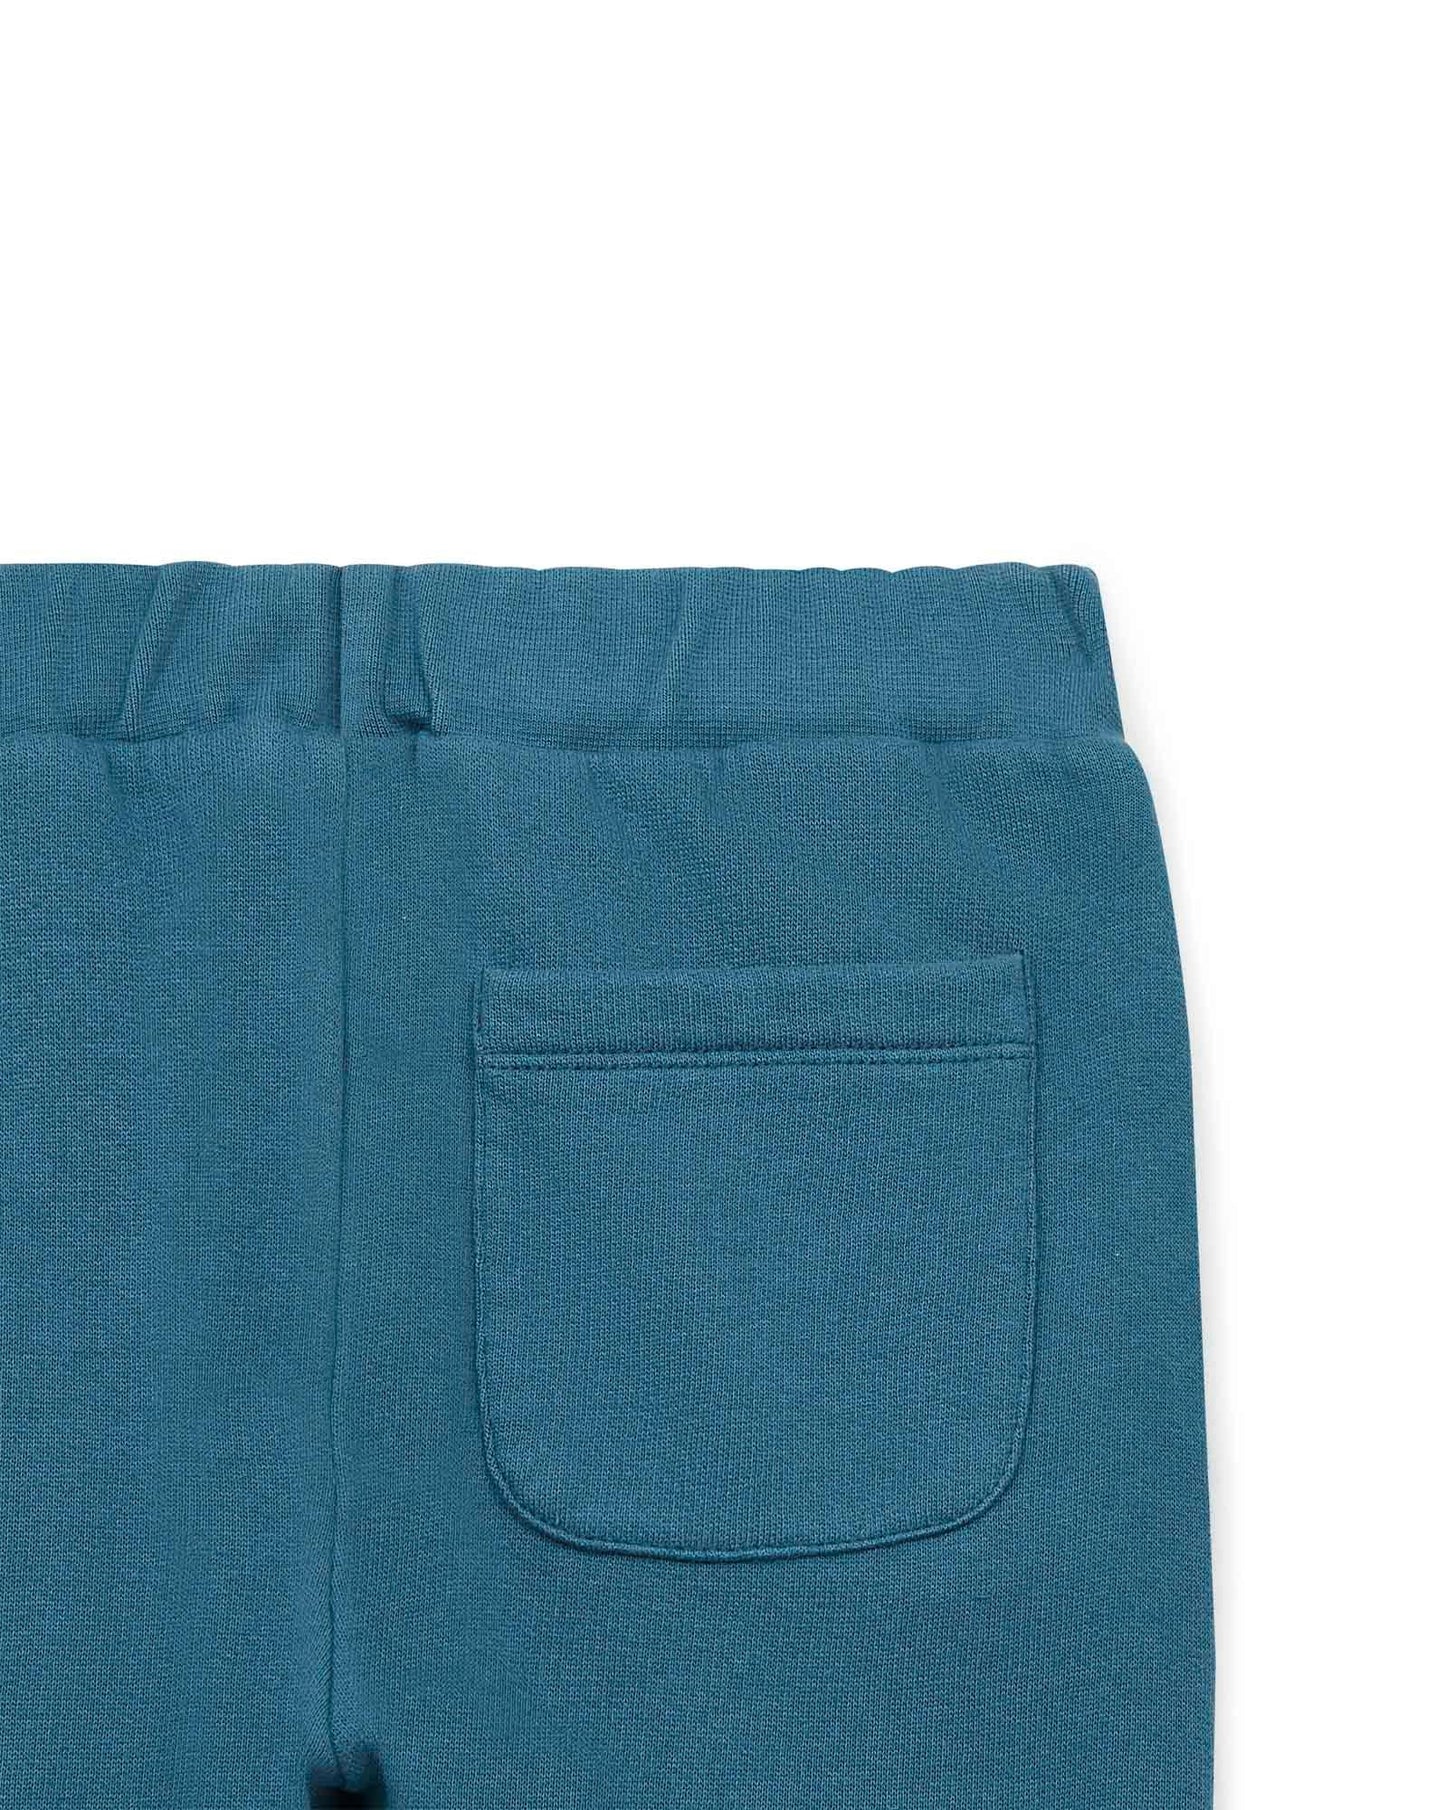 Pantalon - Jogging - bleu en 100% coton